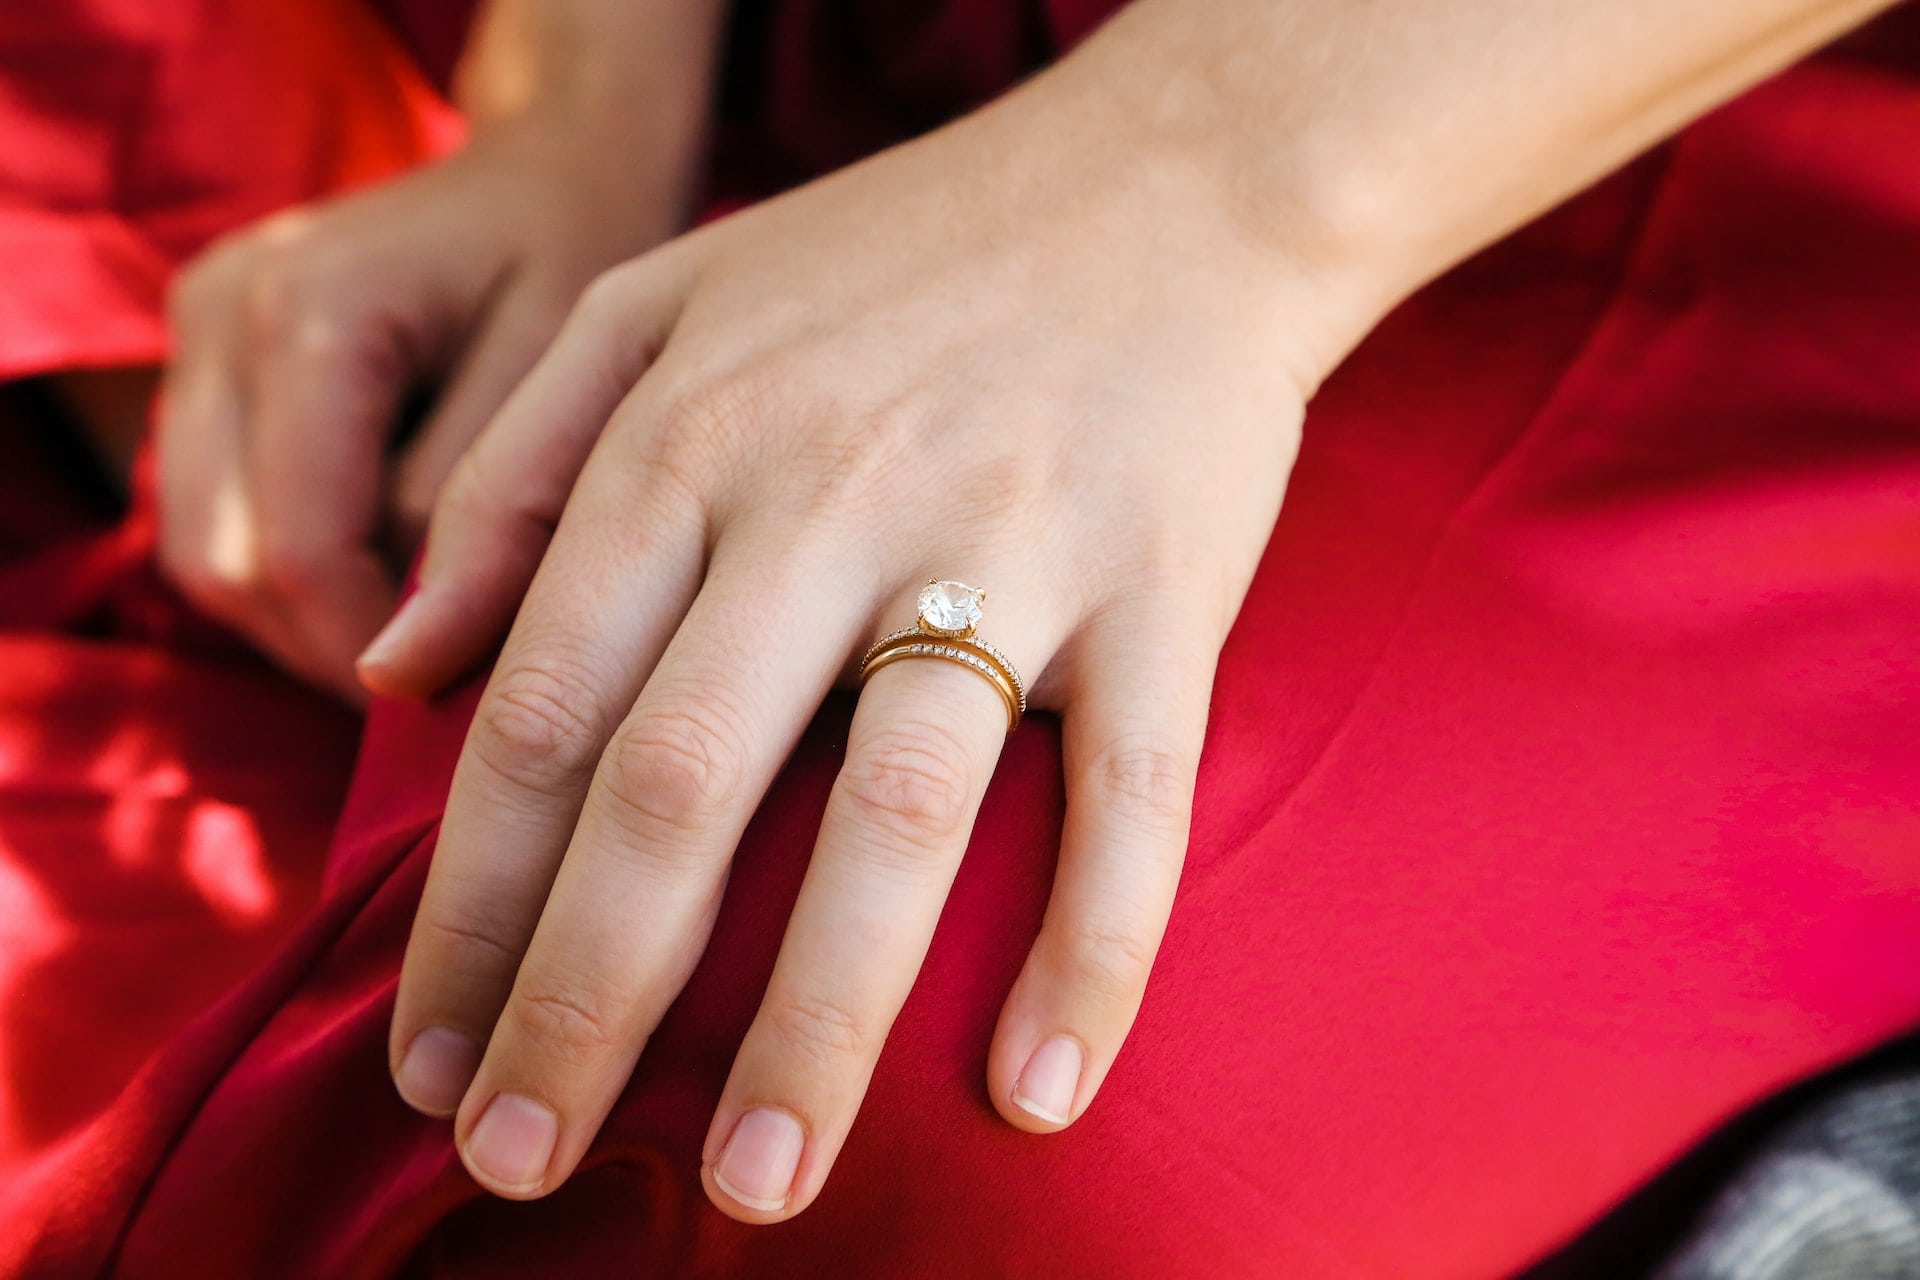 Girl wearing engagement ring